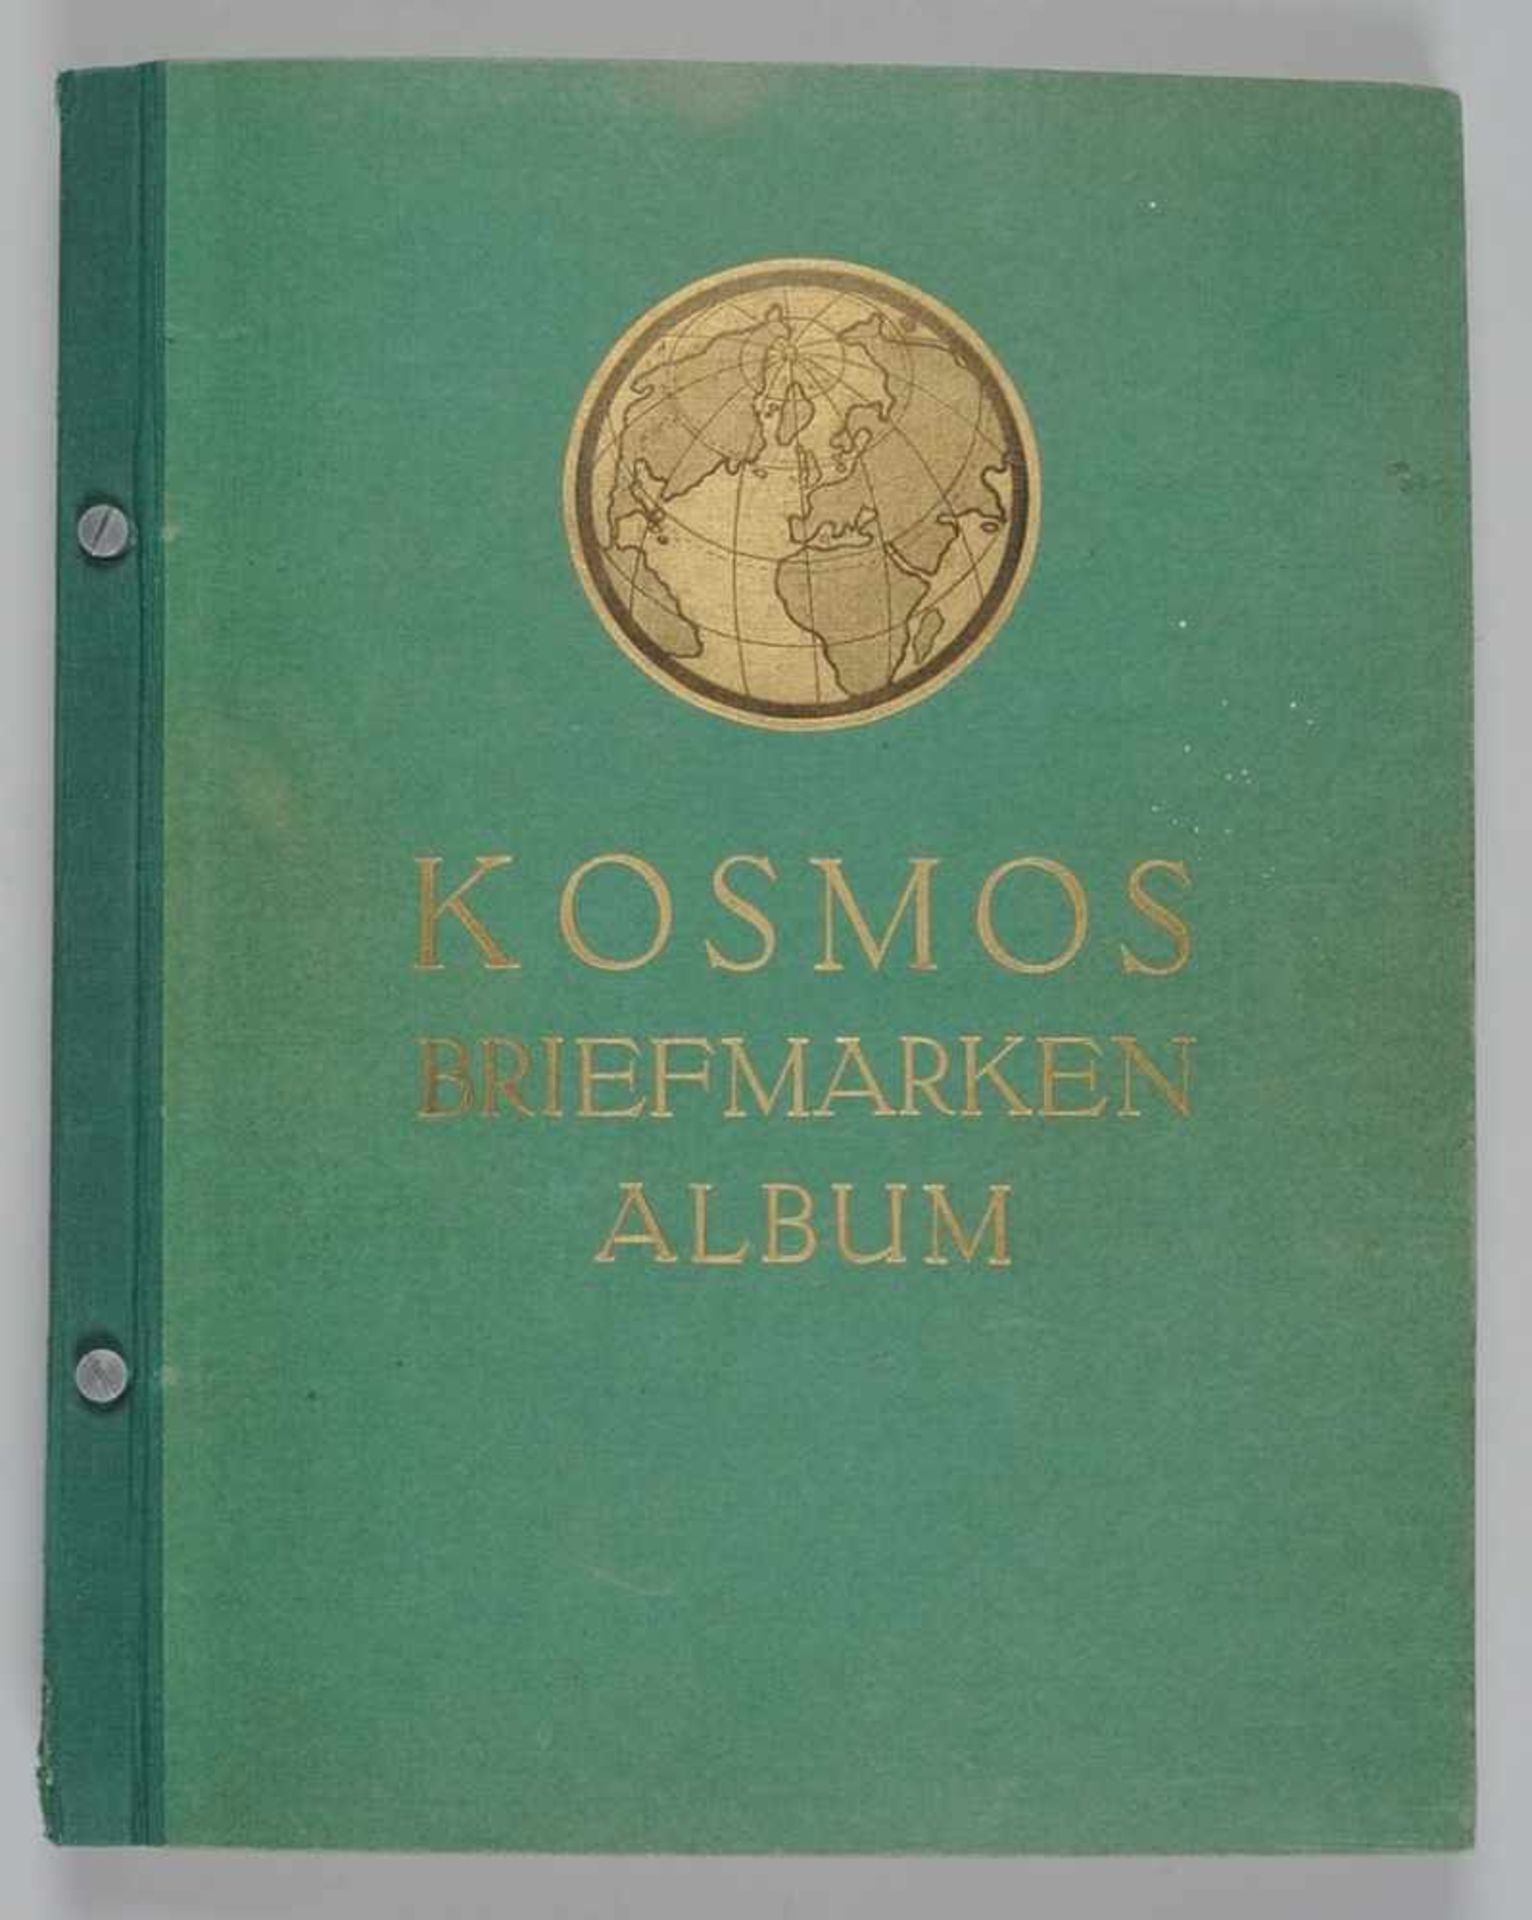 "Kosmos-Briefmarken-Album"Sammelalbum der Zigarettenfabrik Kosmos Dresden mit zahlreichen